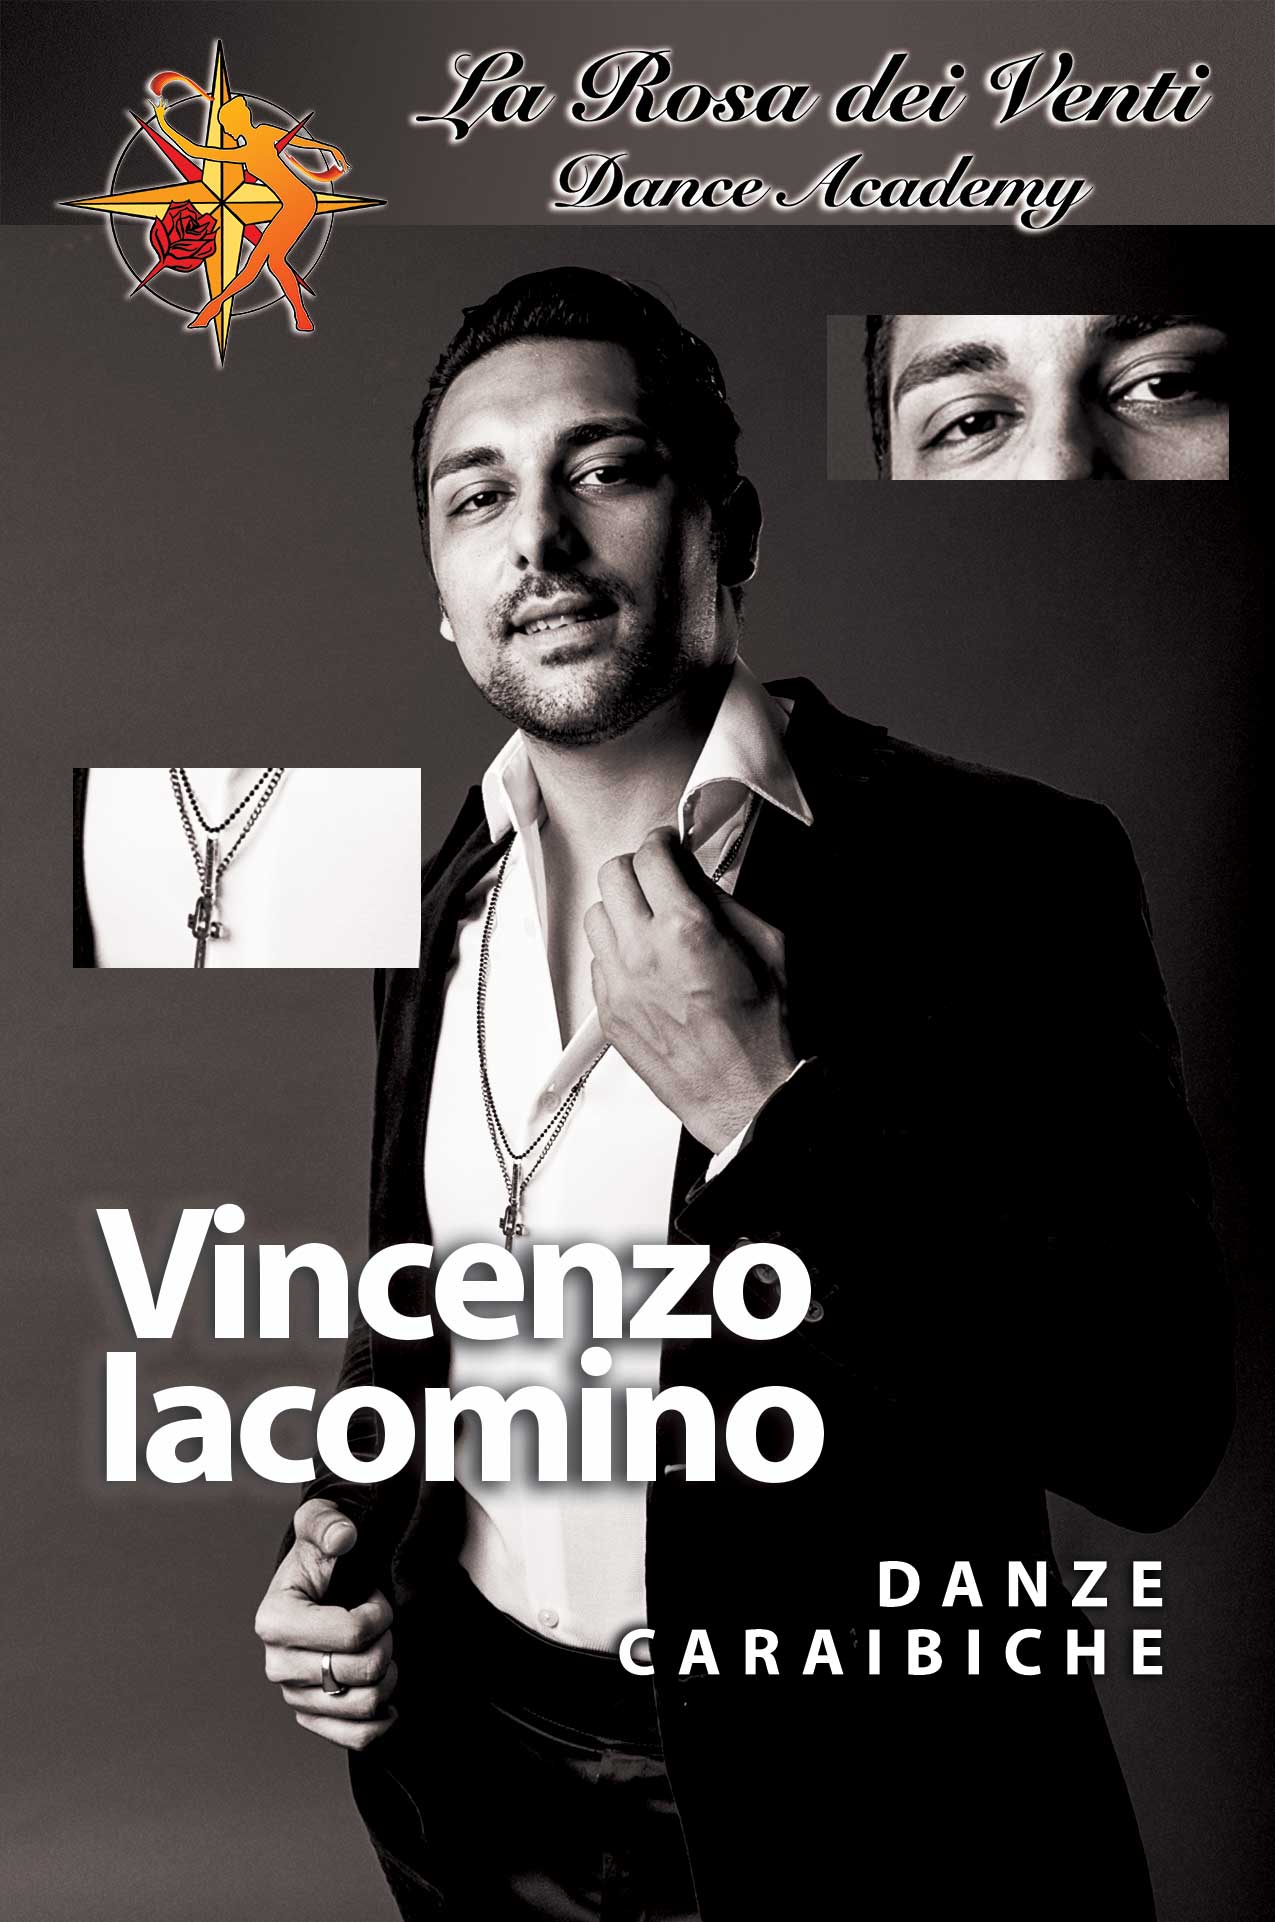 Vincenzo Iacomino Danze Caraibiche La Rosa dei Venti Dance Accademy